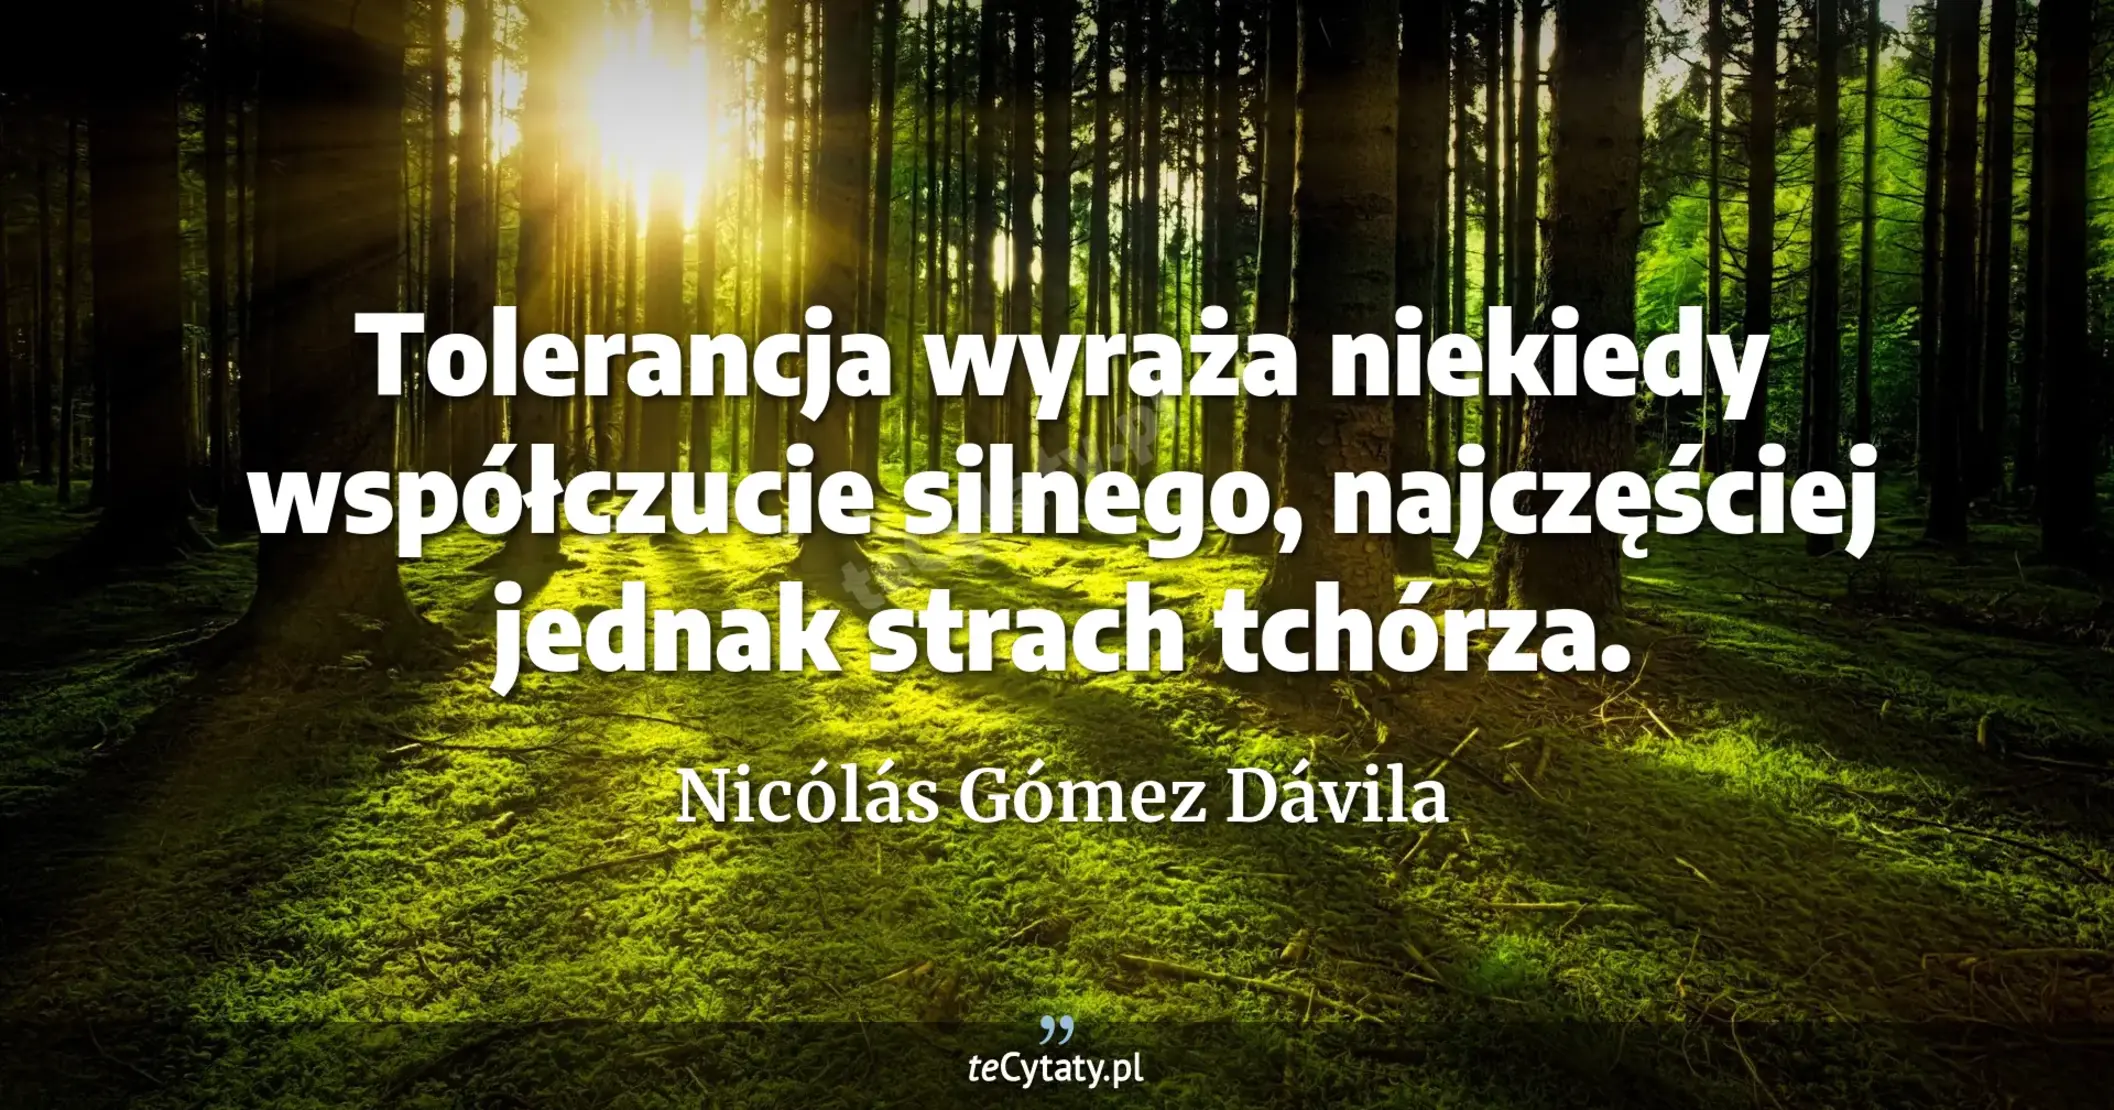 Tolerancja wyraża niekiedy współczucie silnego, najczęściej jednak strach tchórza. - Nicólás Gómez Dávila